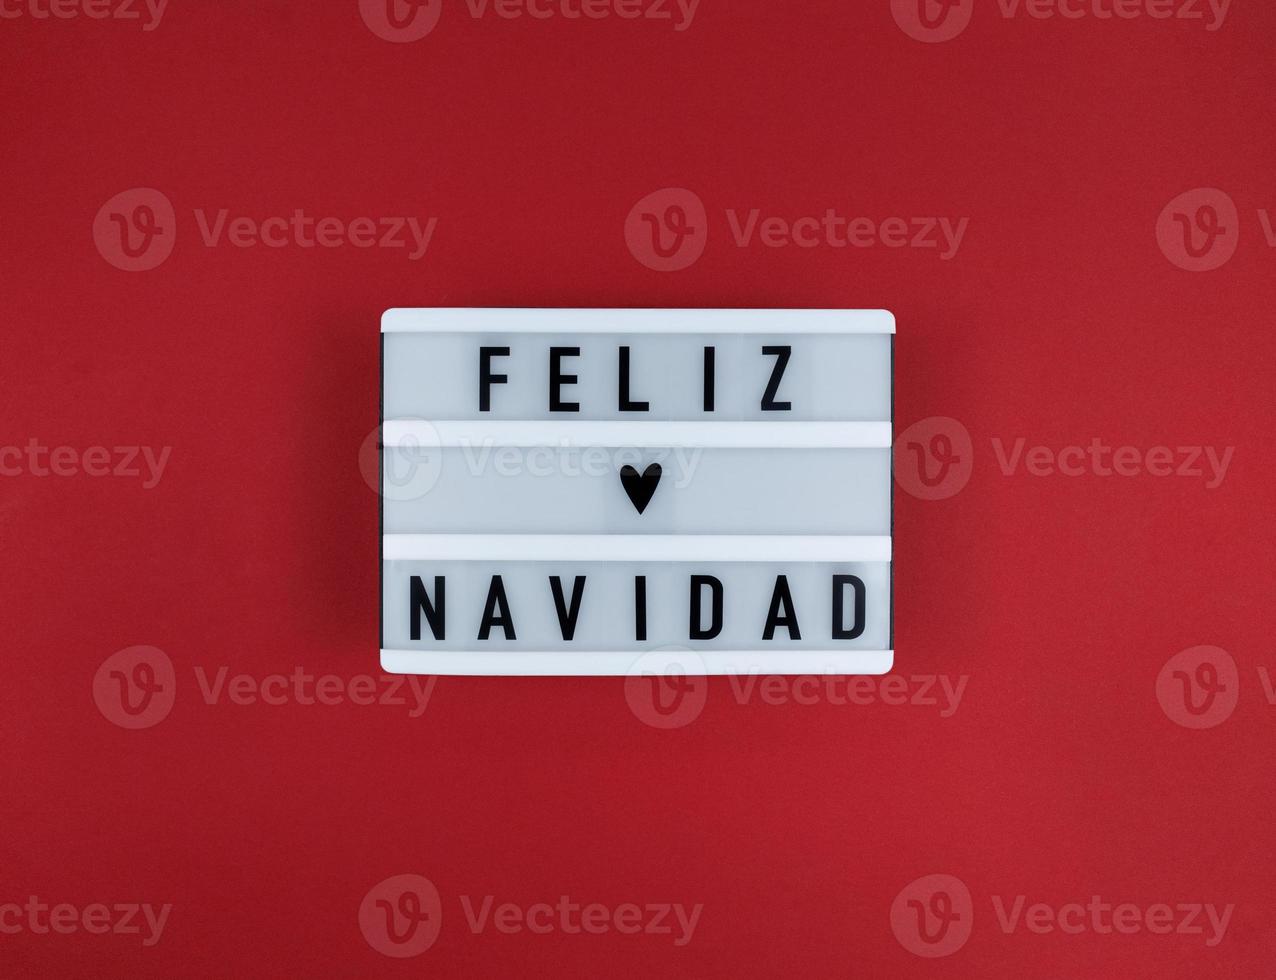 lichtbak met feliz navidad zin, spaans vrolijk kerstfeest op een rode achtergrond. foto